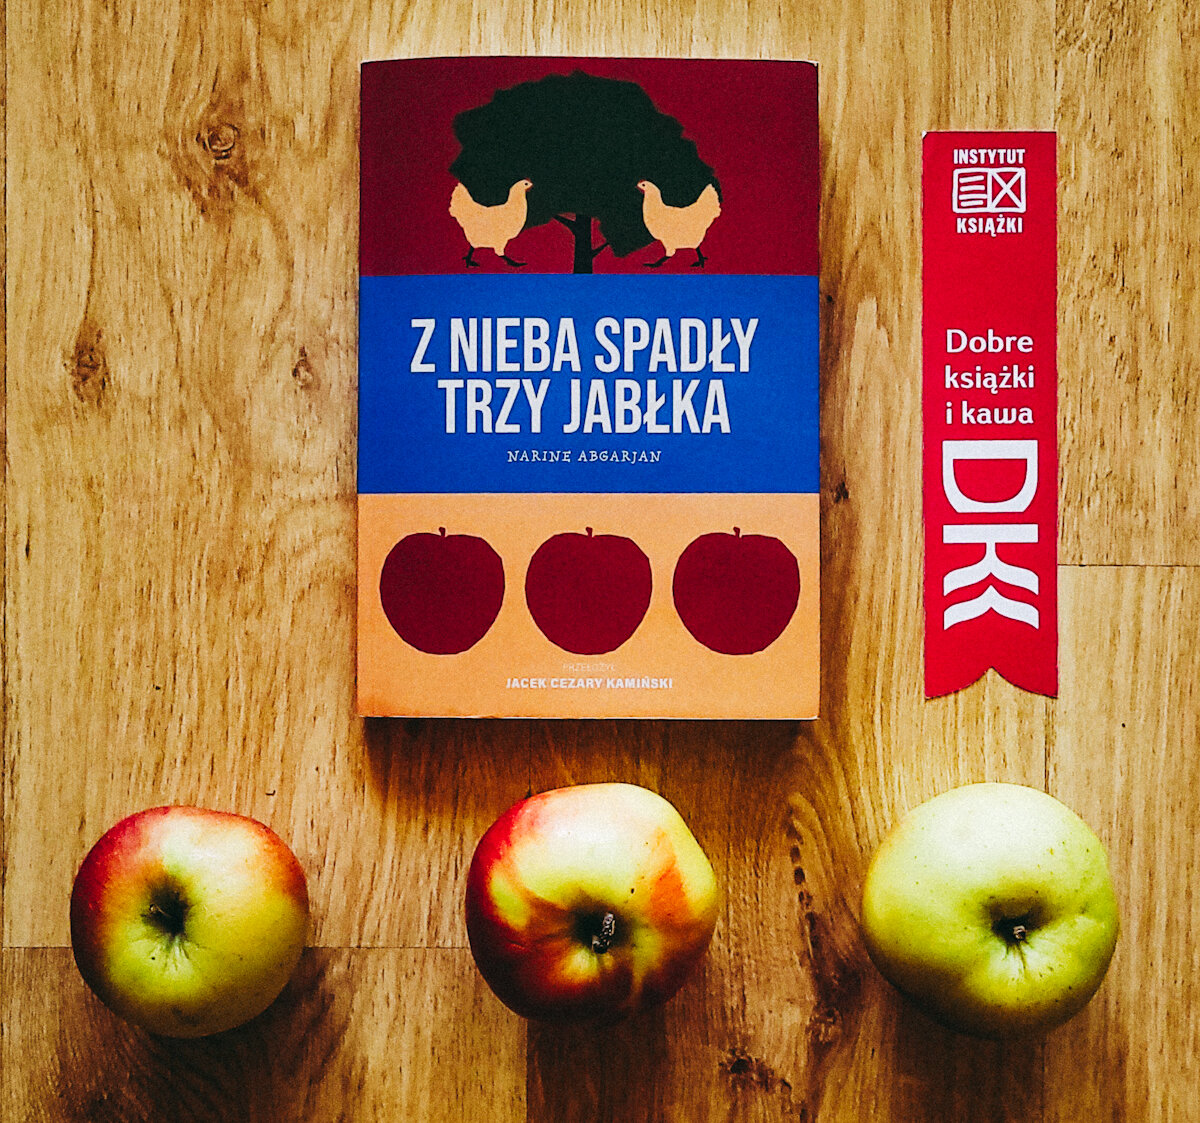 W centrum leży książka „Z nieba spadły trzy jabłka" Narine Abgarjan. Po prawej różowa zakładka do książki z napisem Dobre książki i kawa. Na dole trzy jabłka nawiązujące do okładki książki